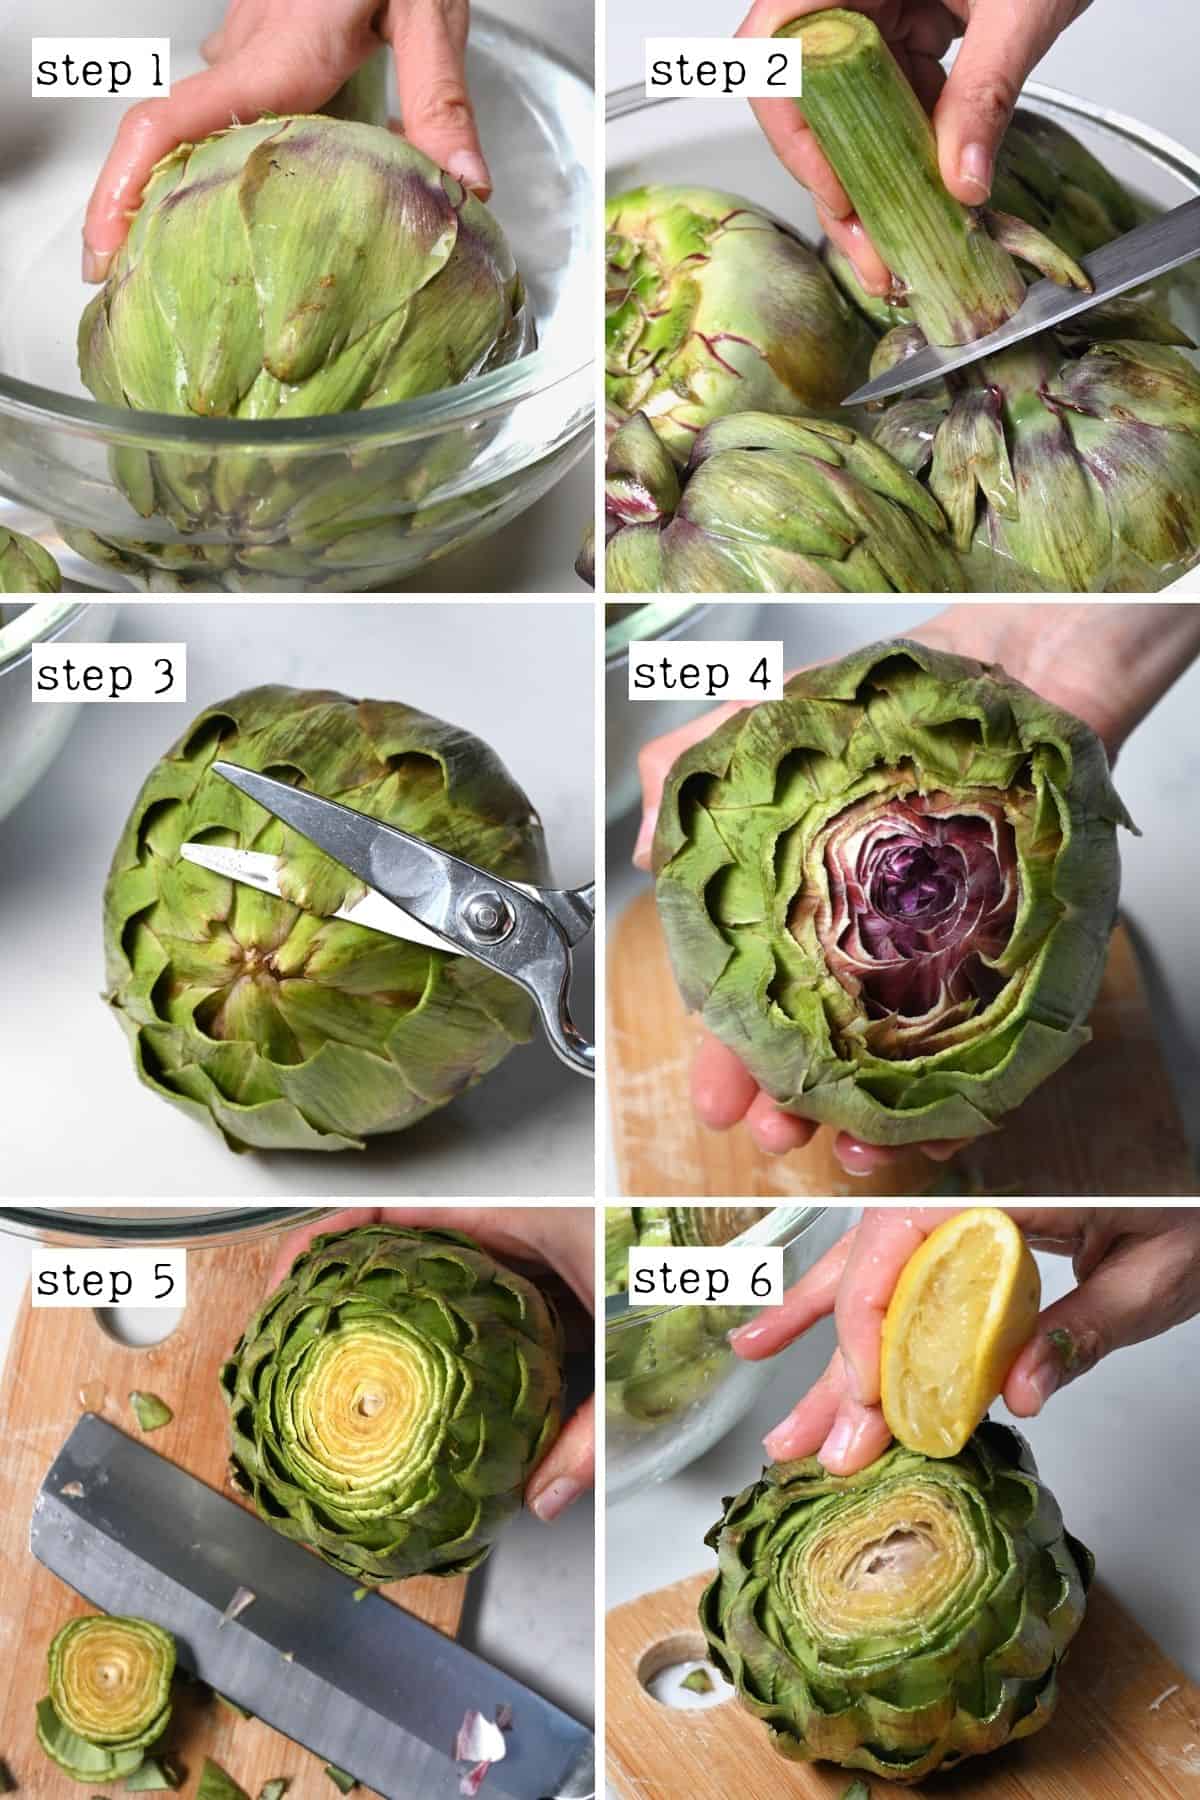 Steps for prepping artichoke